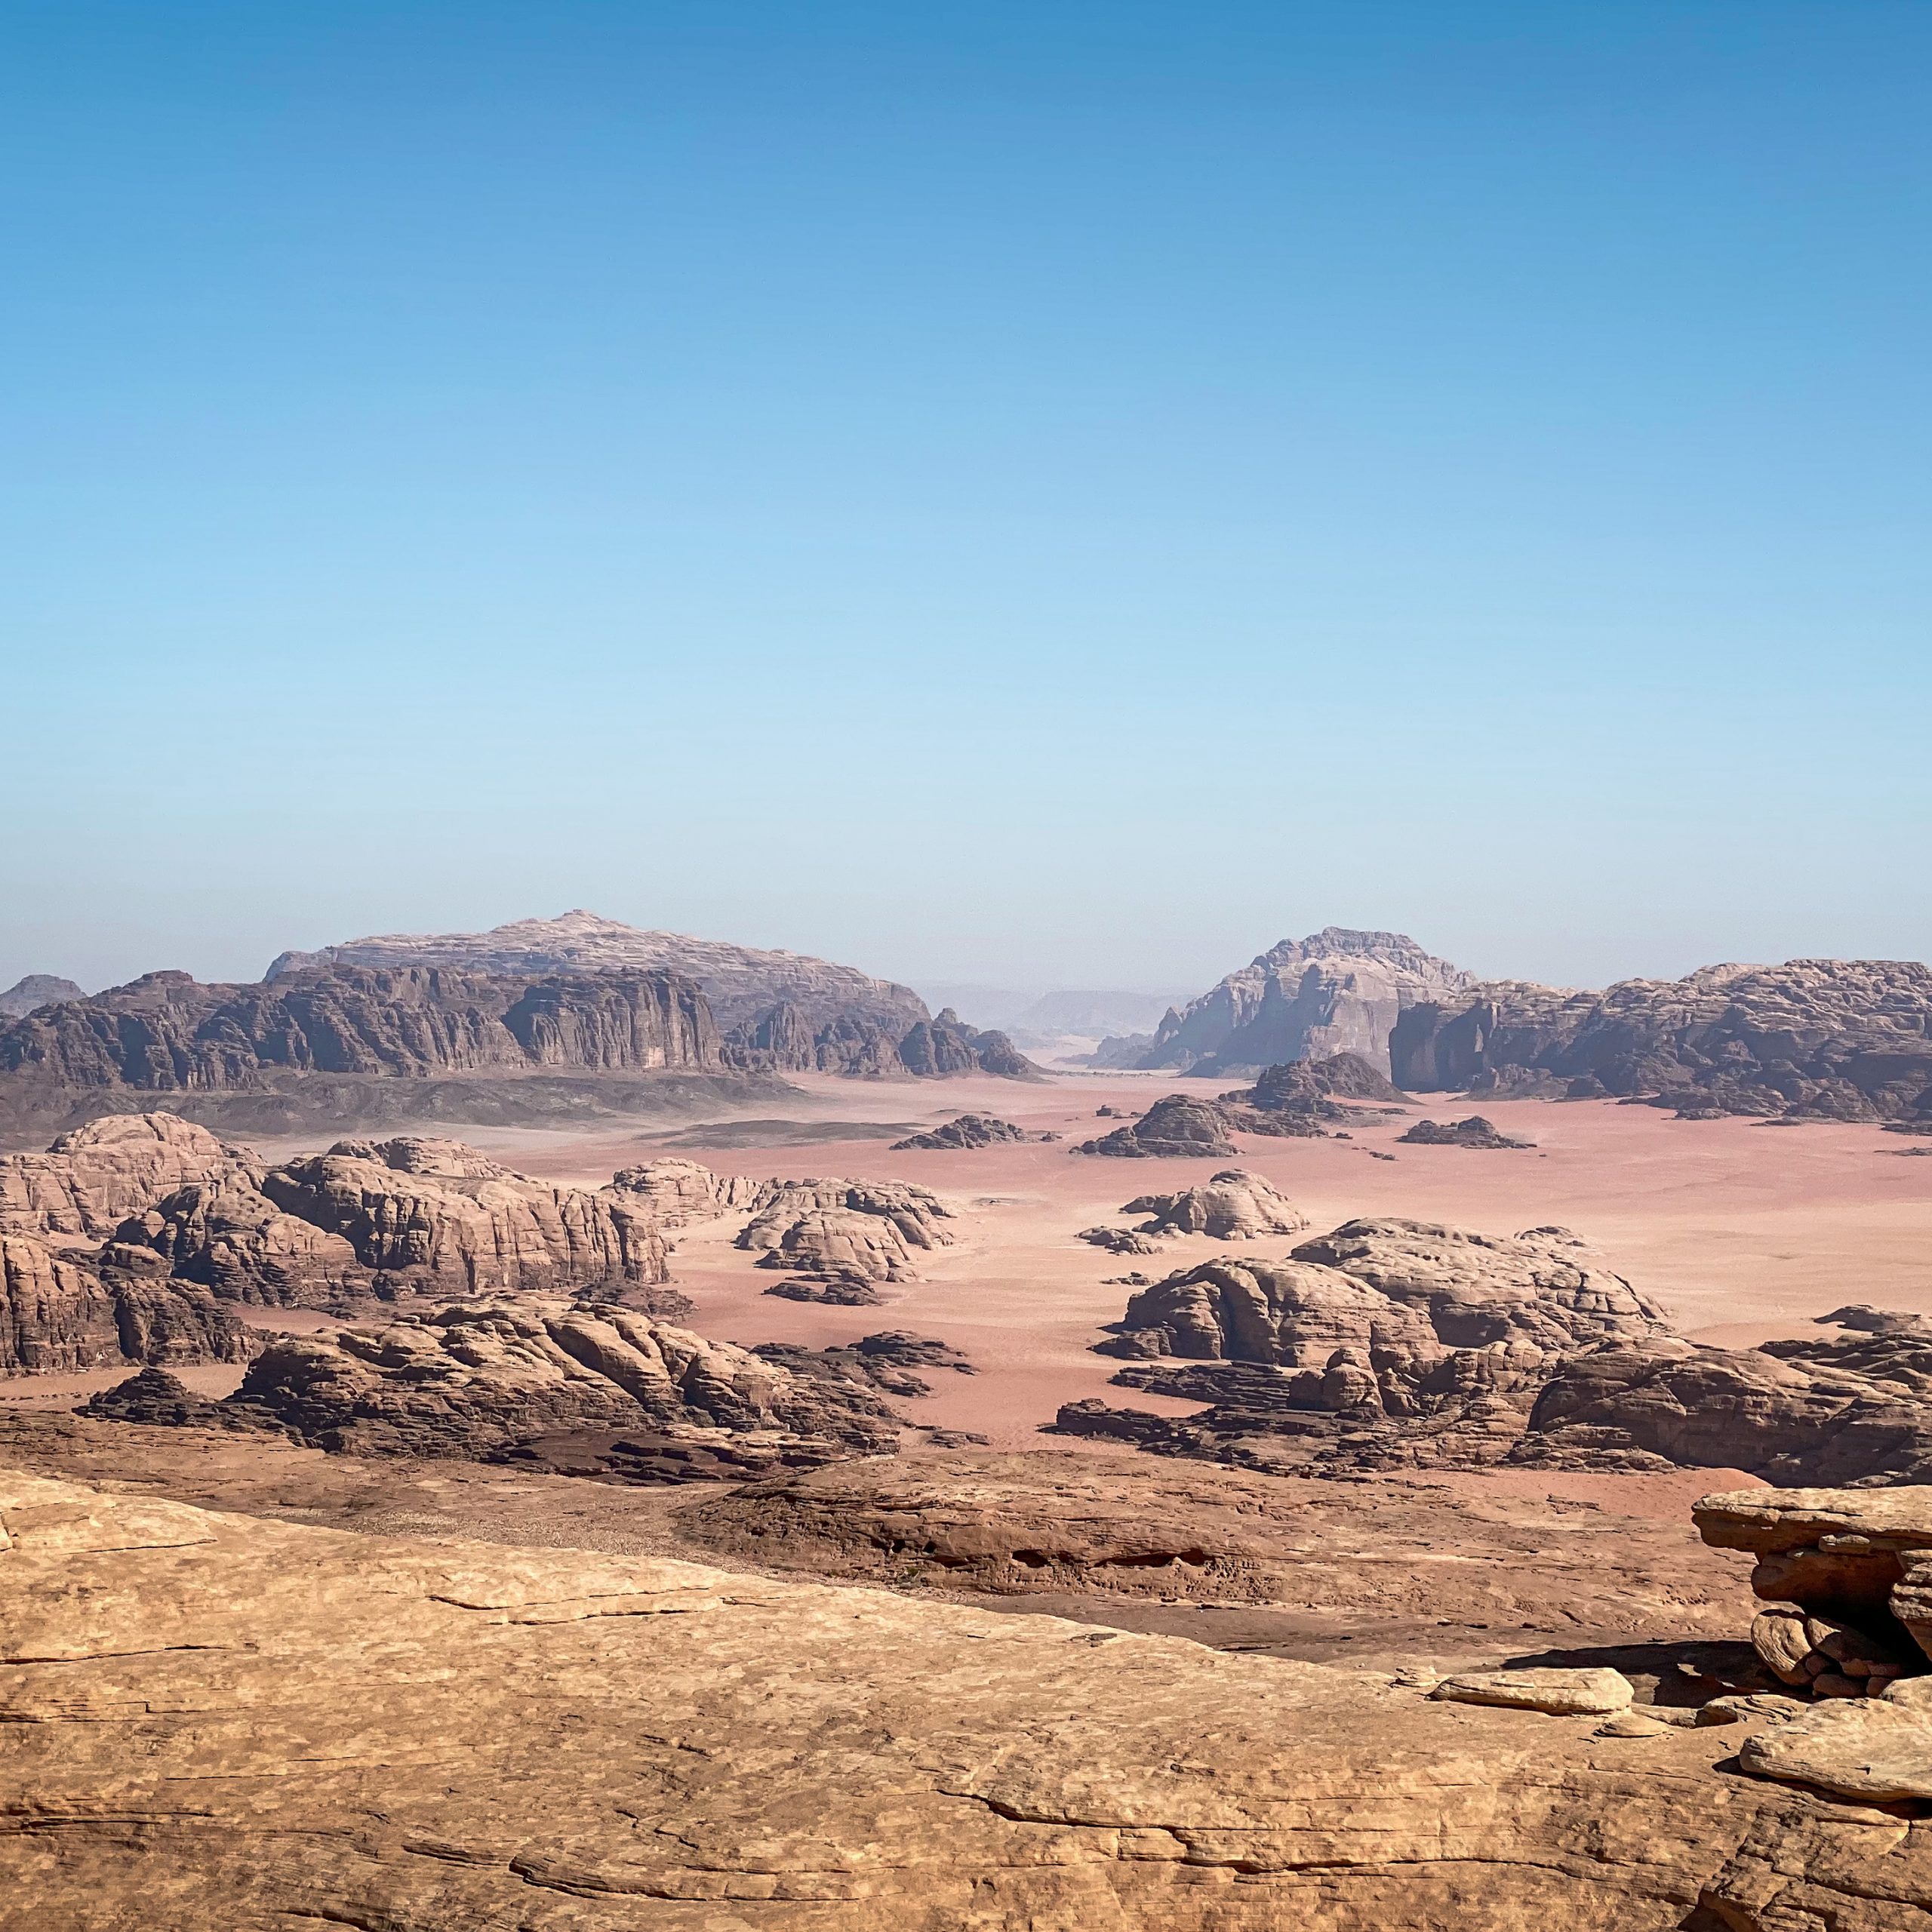 Day 7: Wadi Rum